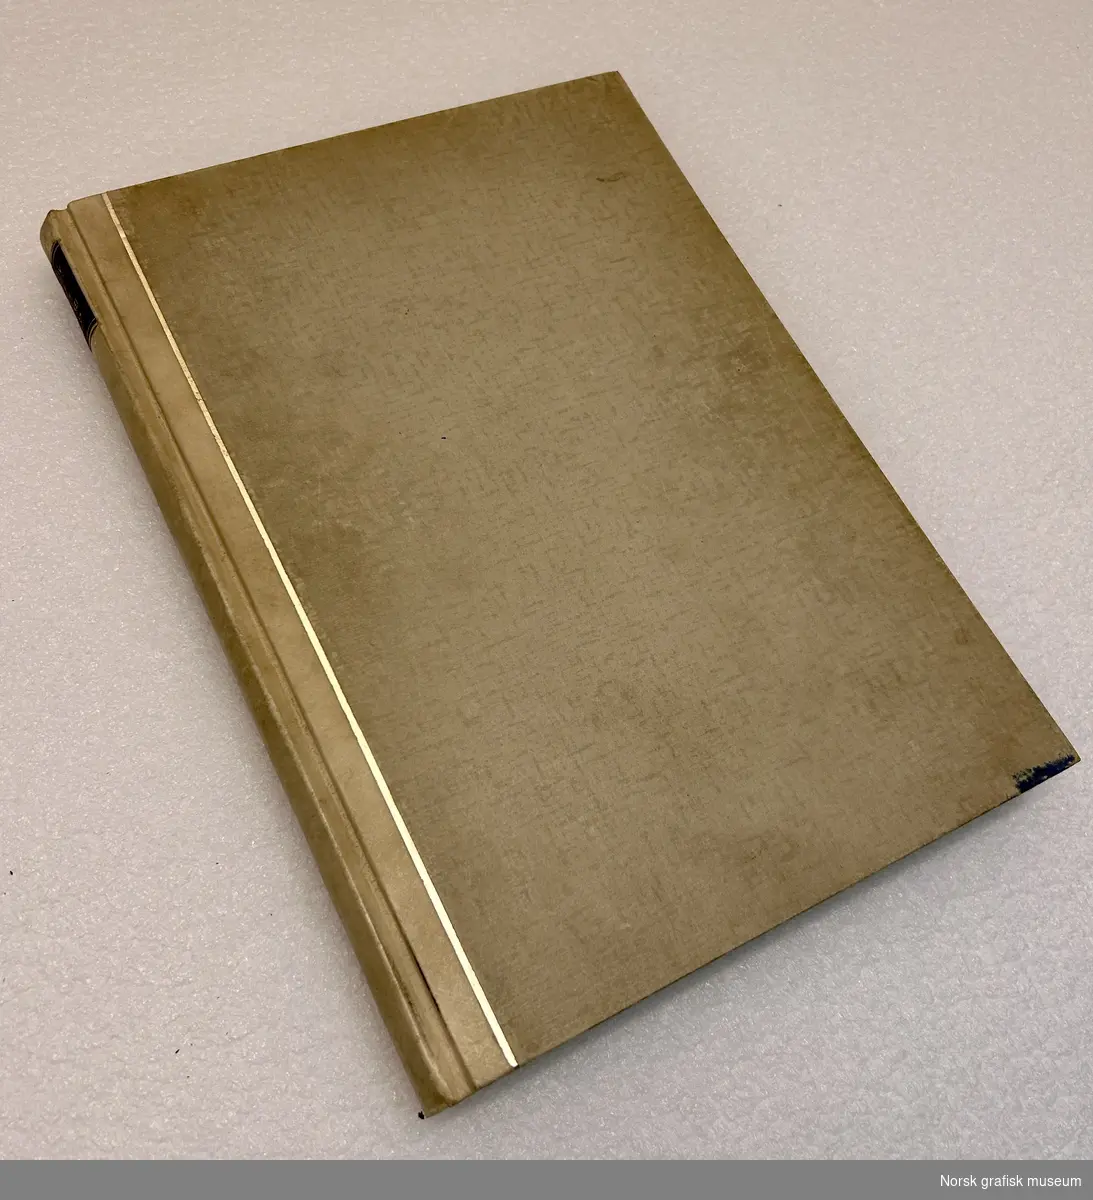 "Archiv für buchbinderei 1936-37" av Dr. Erhard Klette og Dr. Hans Knapp. 

Kvartbind hvor rygg og overtrekk har ulikt materiale. Rygg dser ut til å være av skinn, overtrekk av papir. En smal vertikal linje av gull skiller de to materialene.